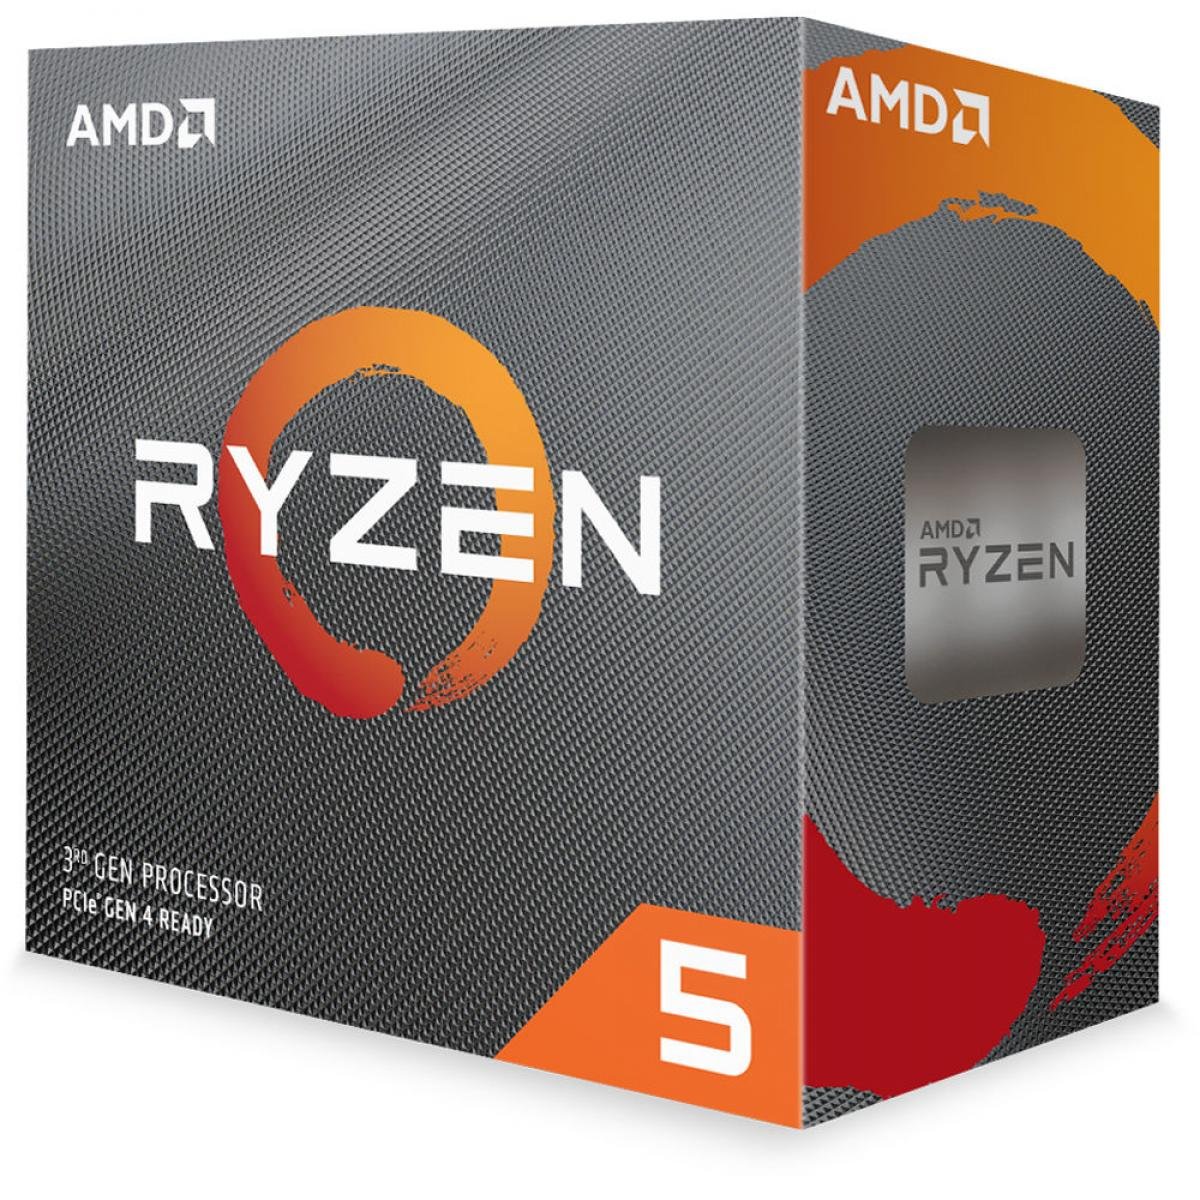 Amd Ryzen 5 3500x 6-core 3.6 Ghz (4.1 Ghz Max Boost) |  AMD |  CPU & Processor